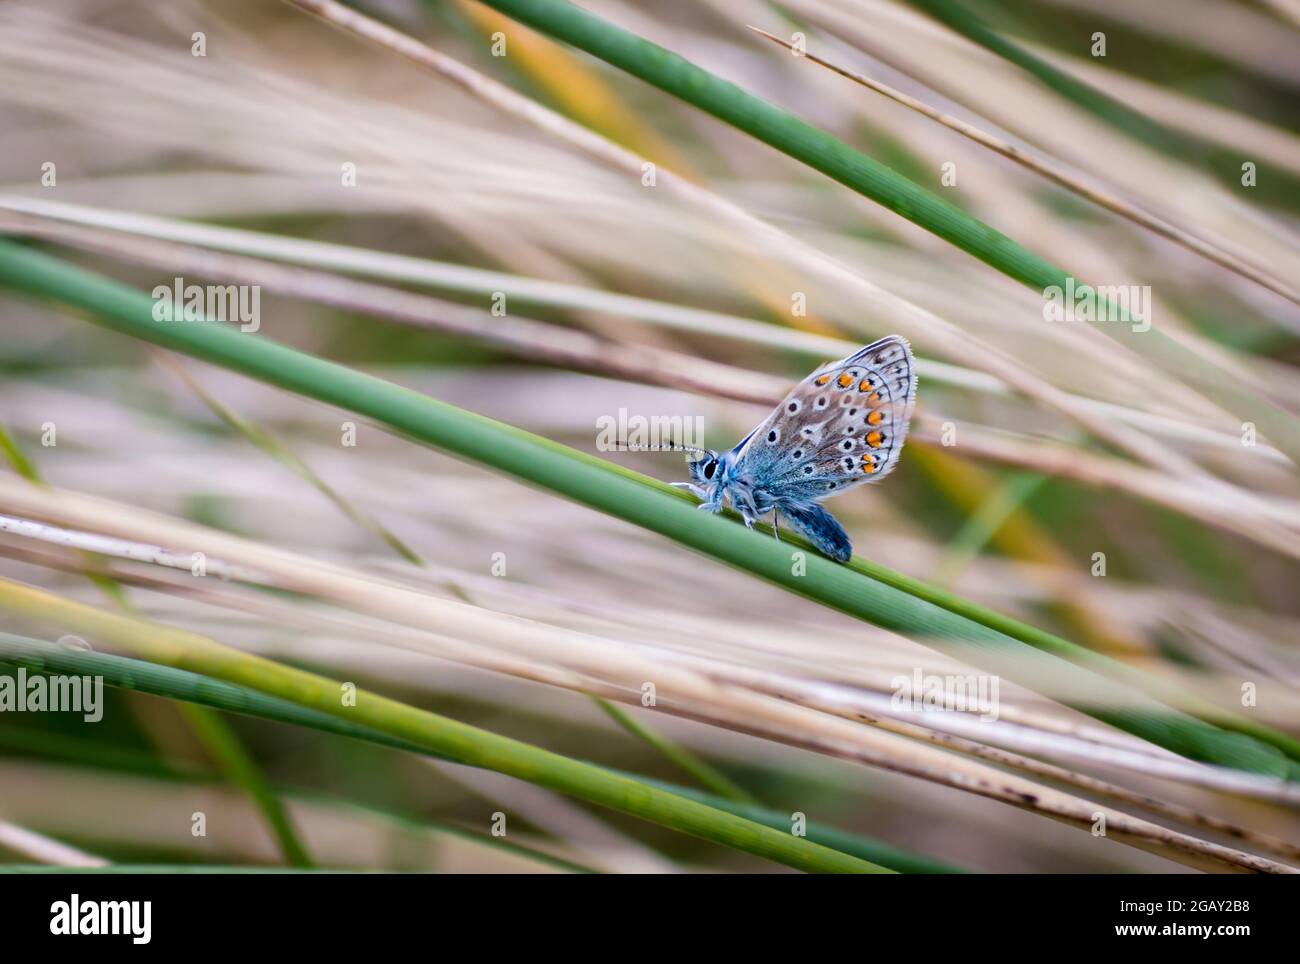 Vista ventral de una mariposa azul común en hierba con alas cerradas Foto de stock